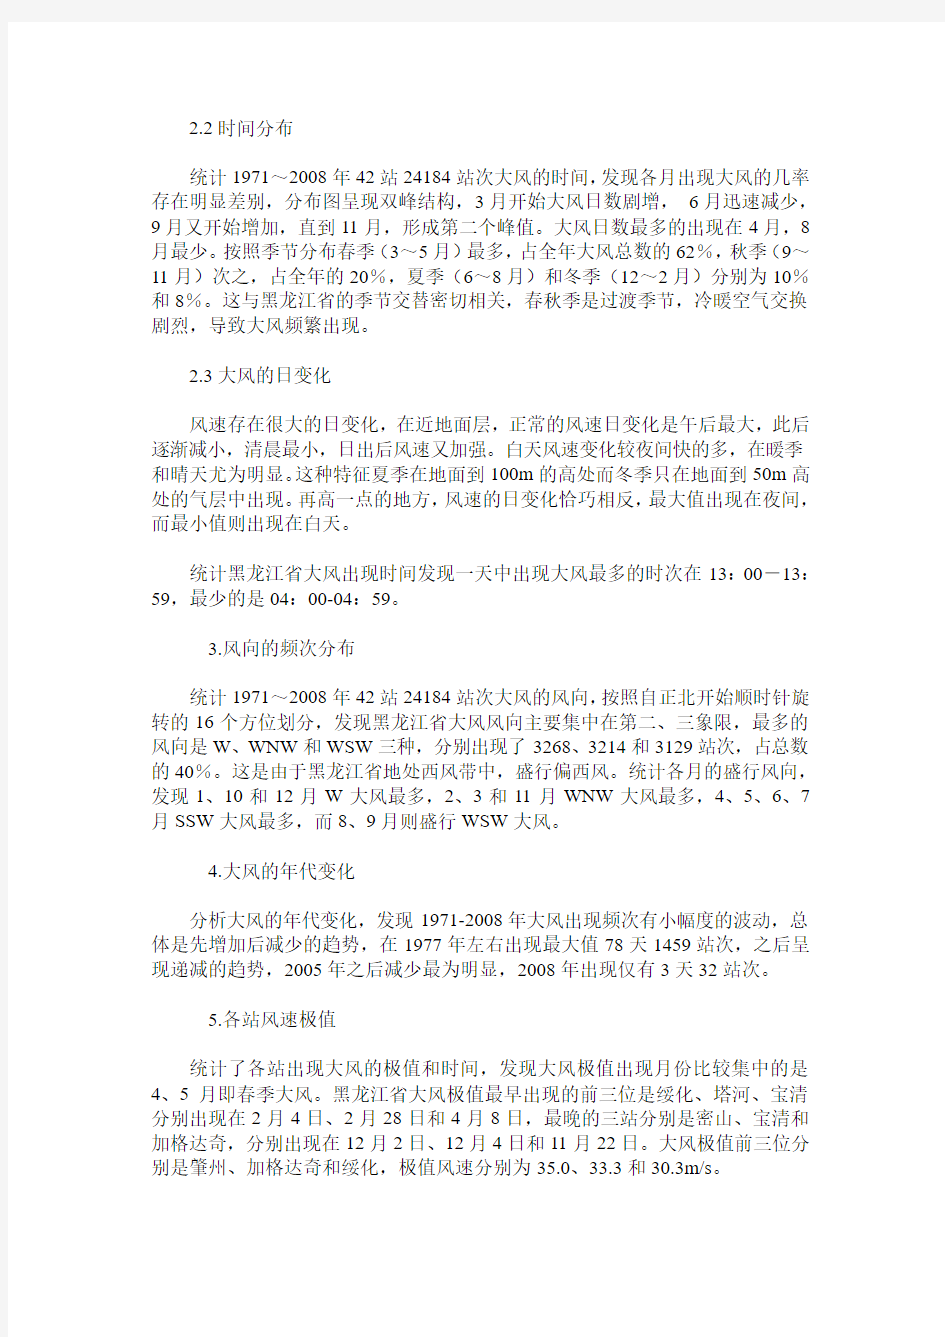 黑龙江省大风气候特征分析